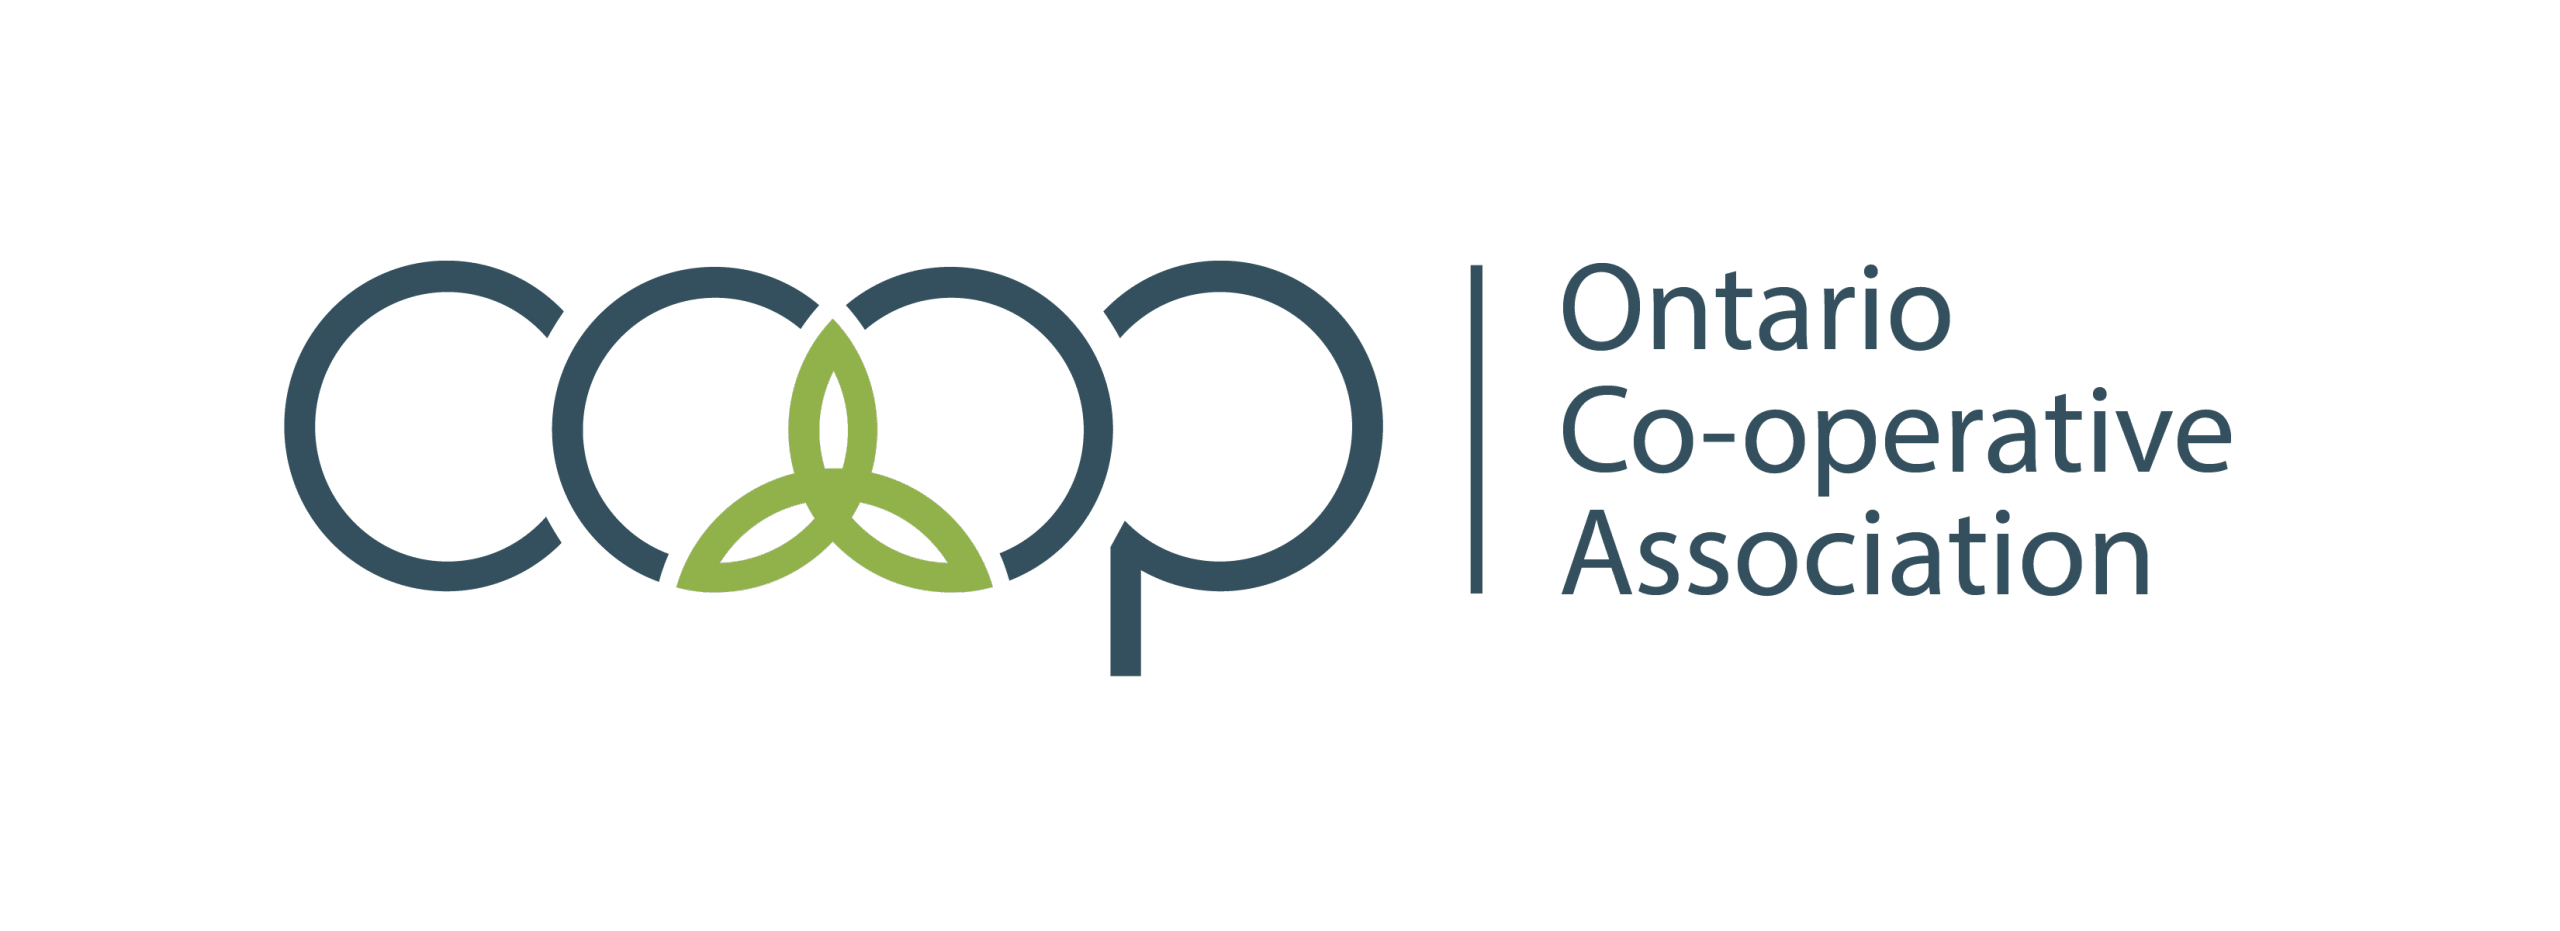 Ontario Cp-operative Association Logo